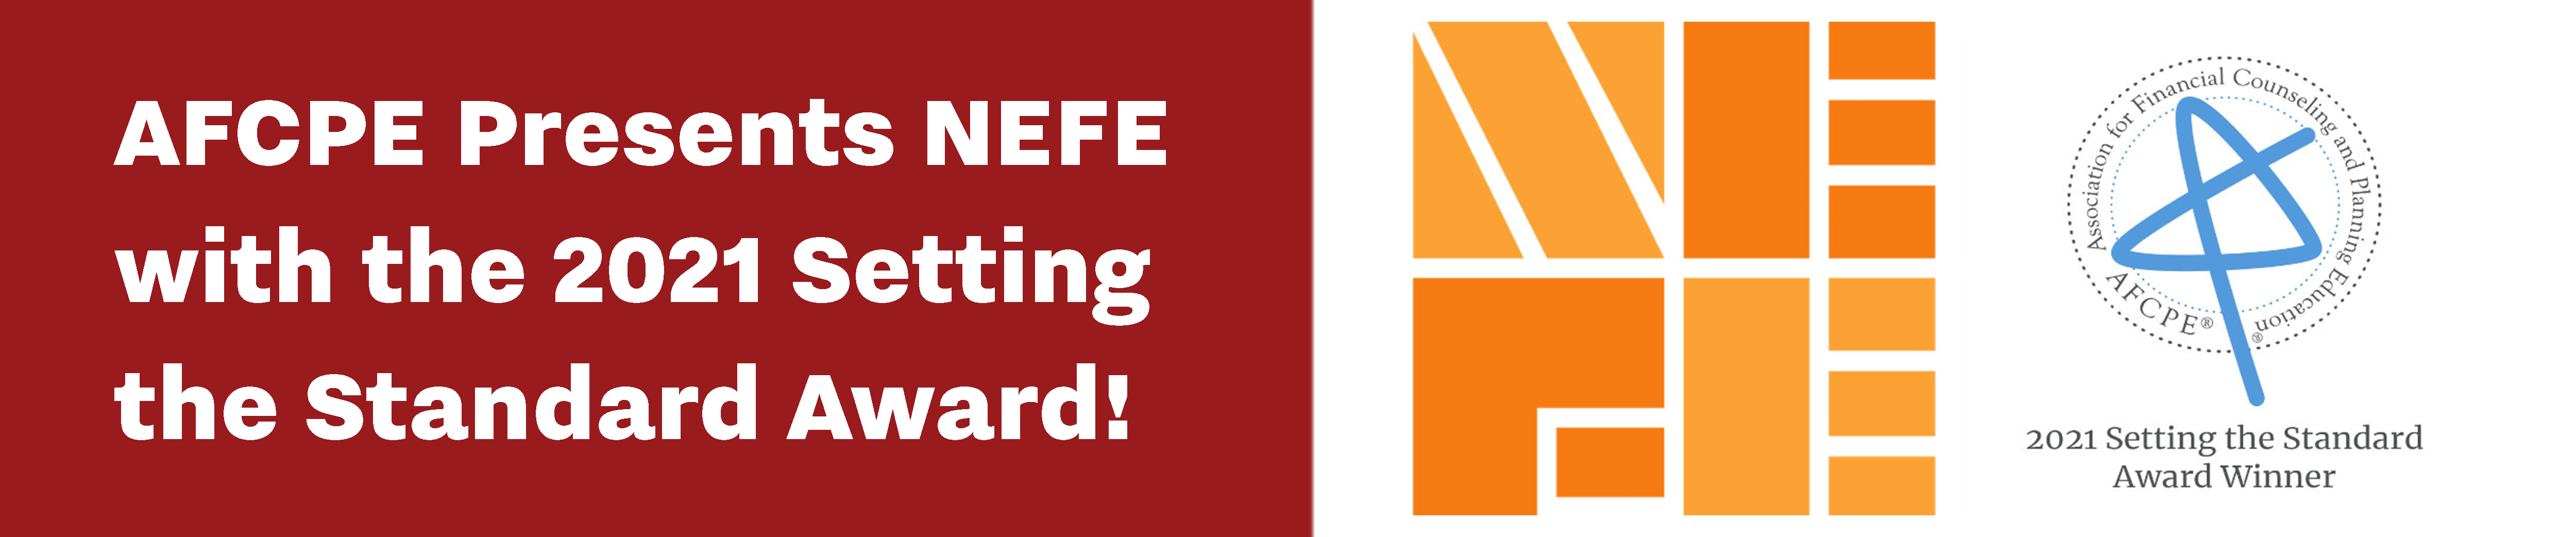 NEFE and AFCPE logos